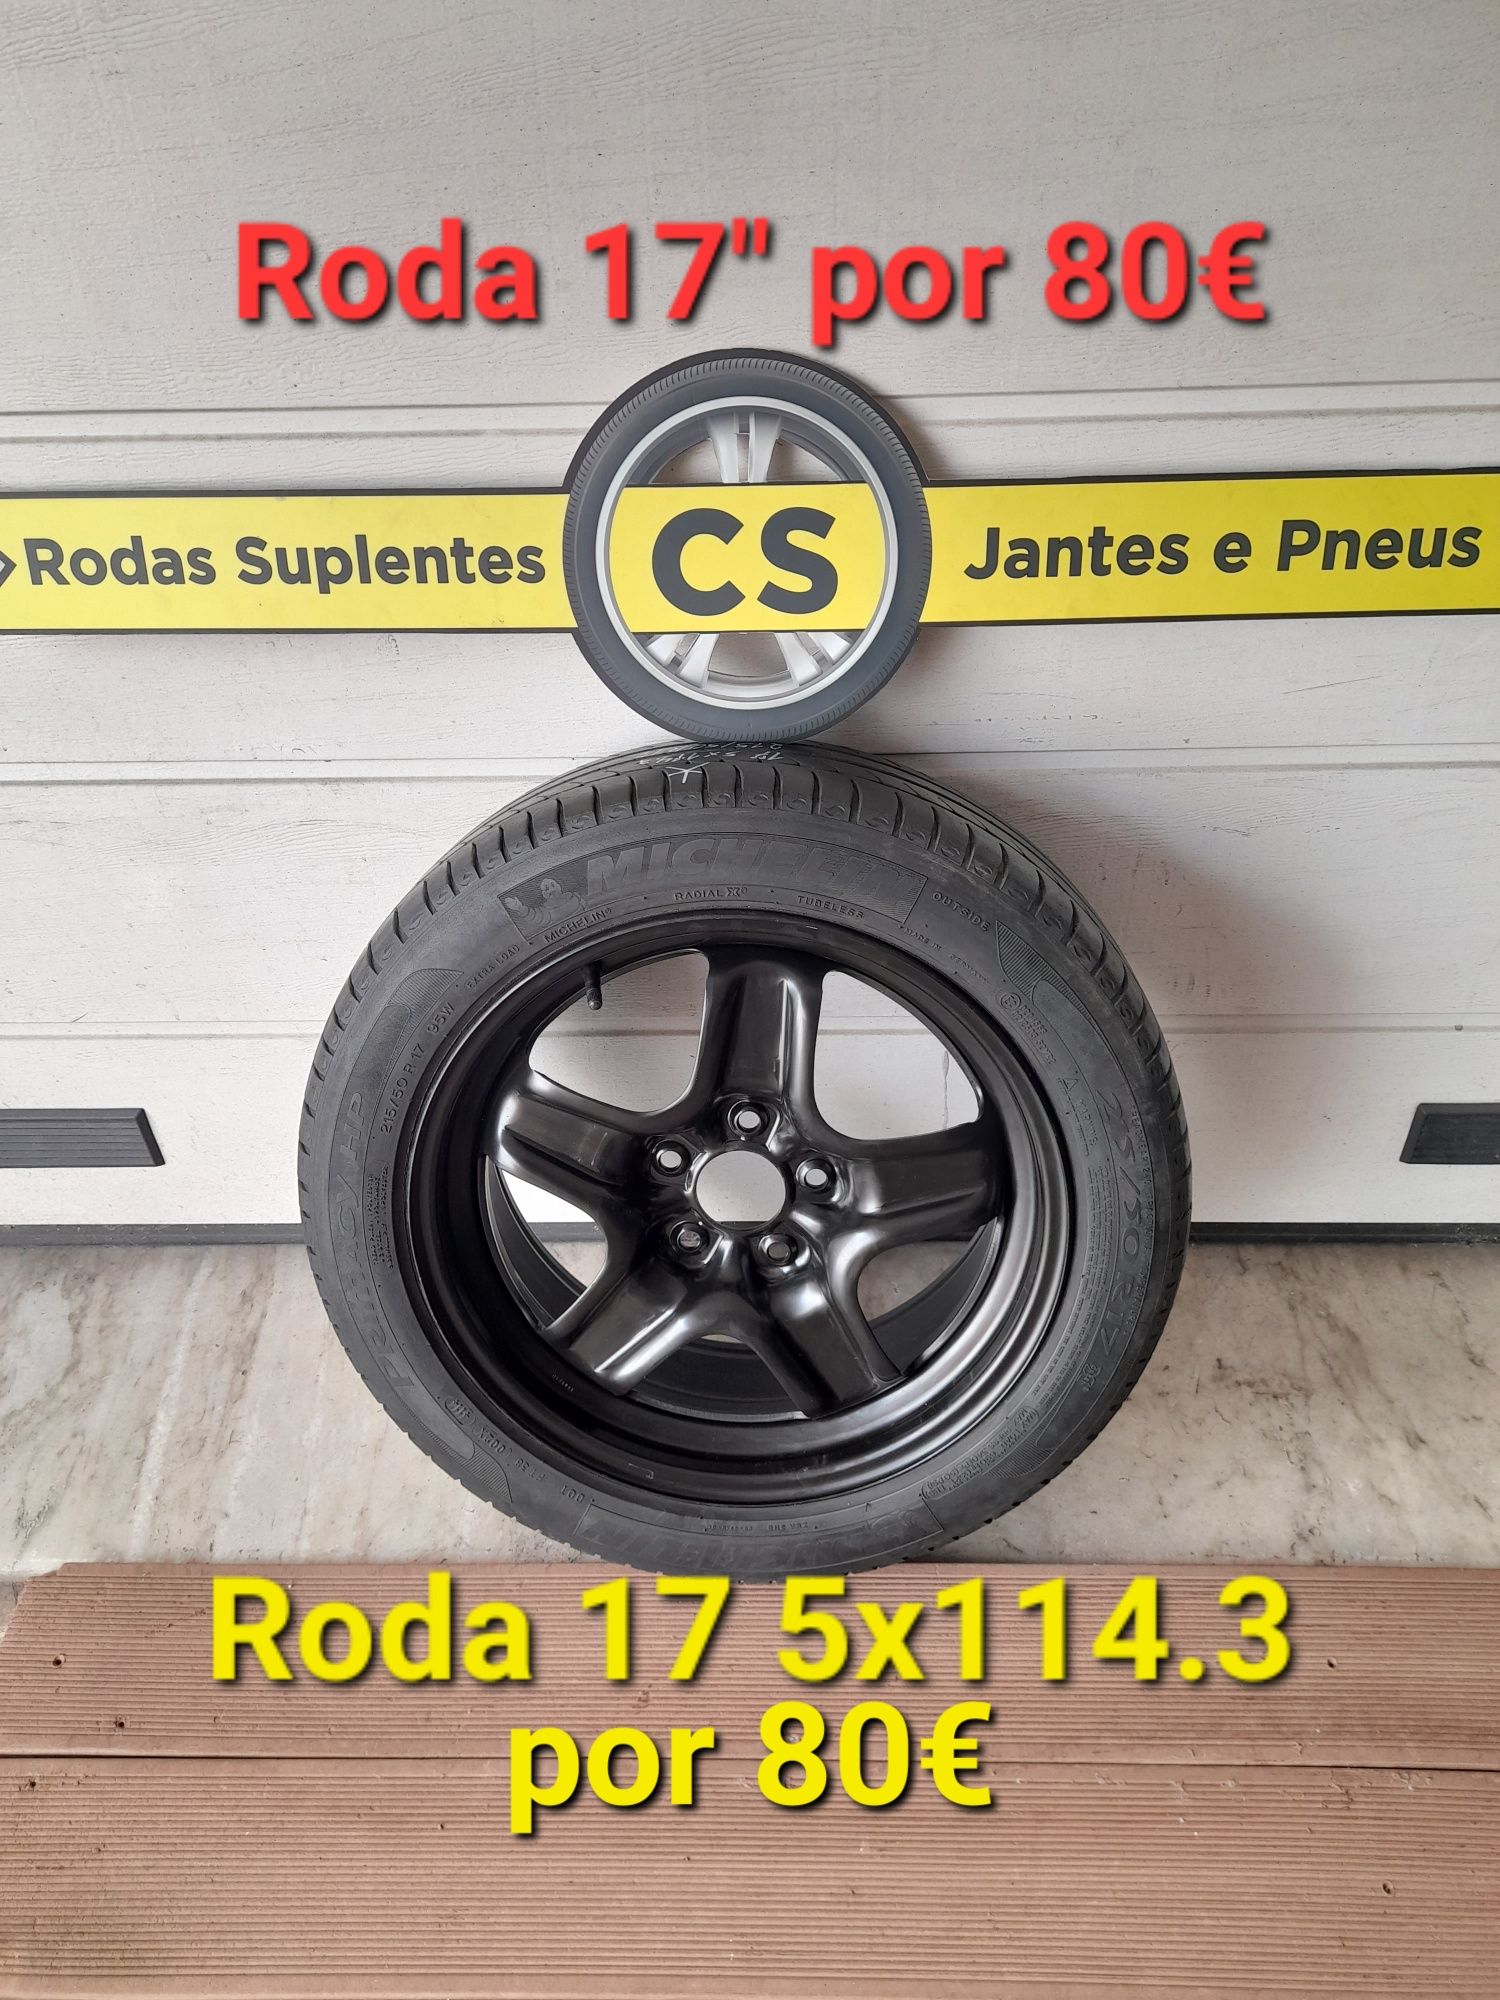 Roda suplente Jante 16 ou 17, 5x114,3 Renault Nissan Honda, com pneu